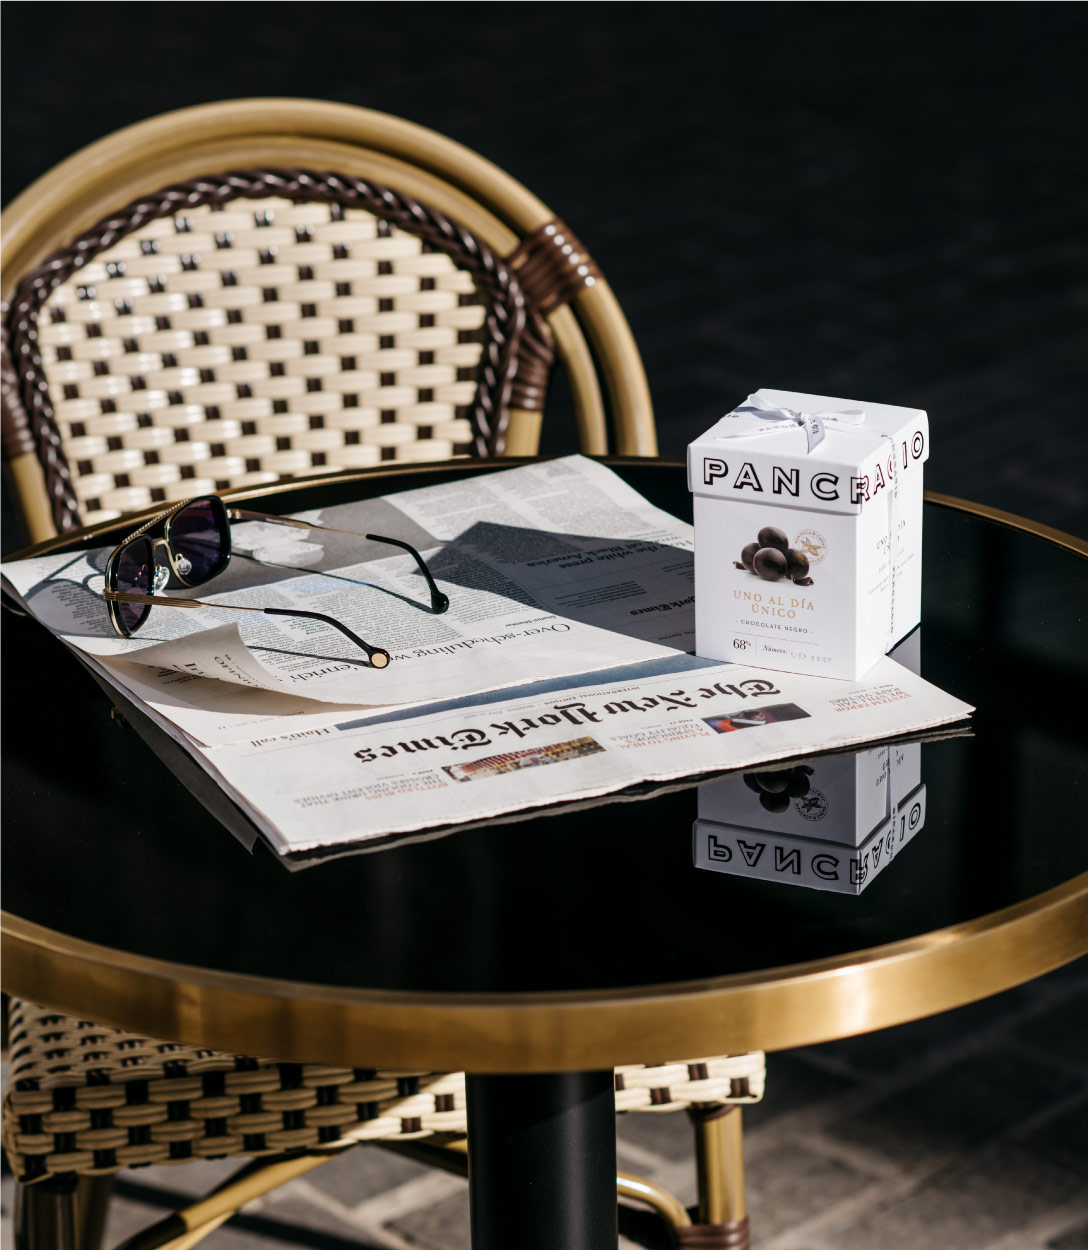 Una mesa al sol, con un periódica y gafas de sol junto a una caja de chocolates Pancracio